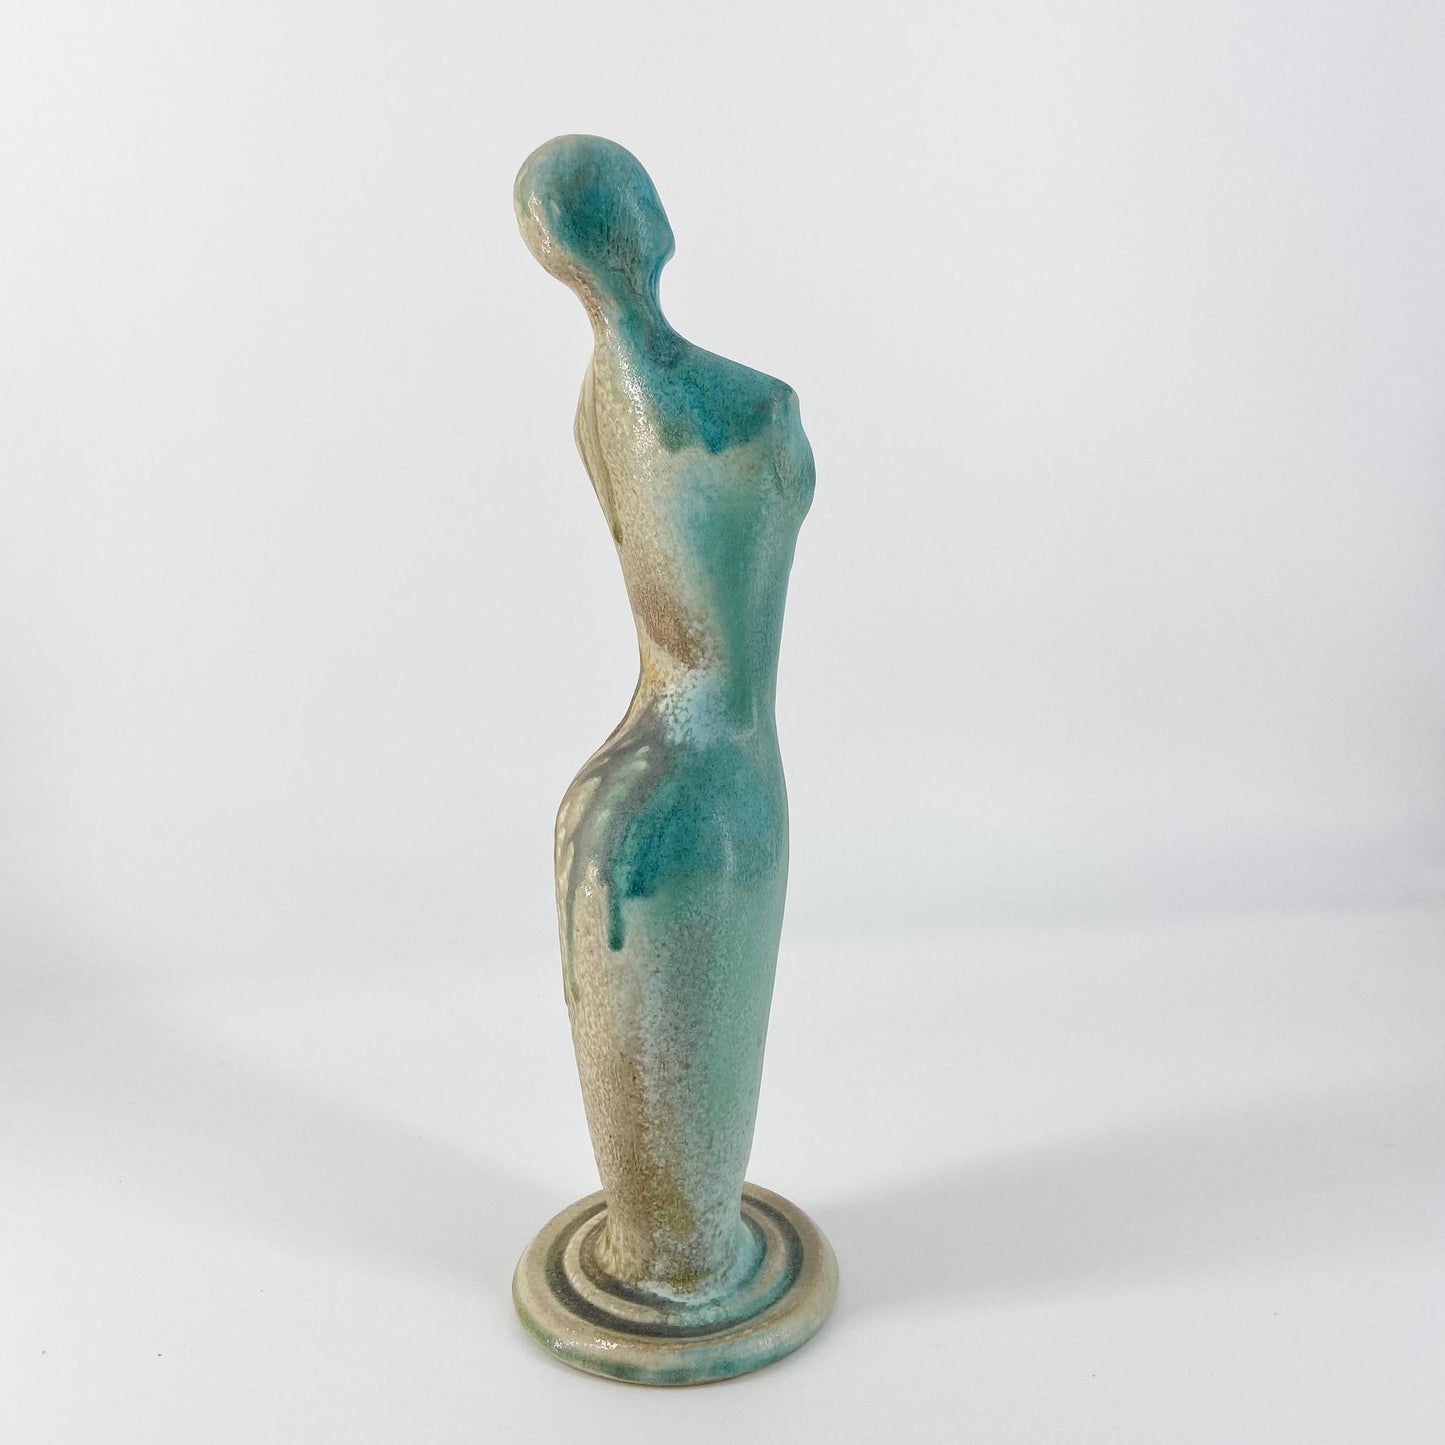 Sculpture - Female Form in Ceramic - Soda Fired